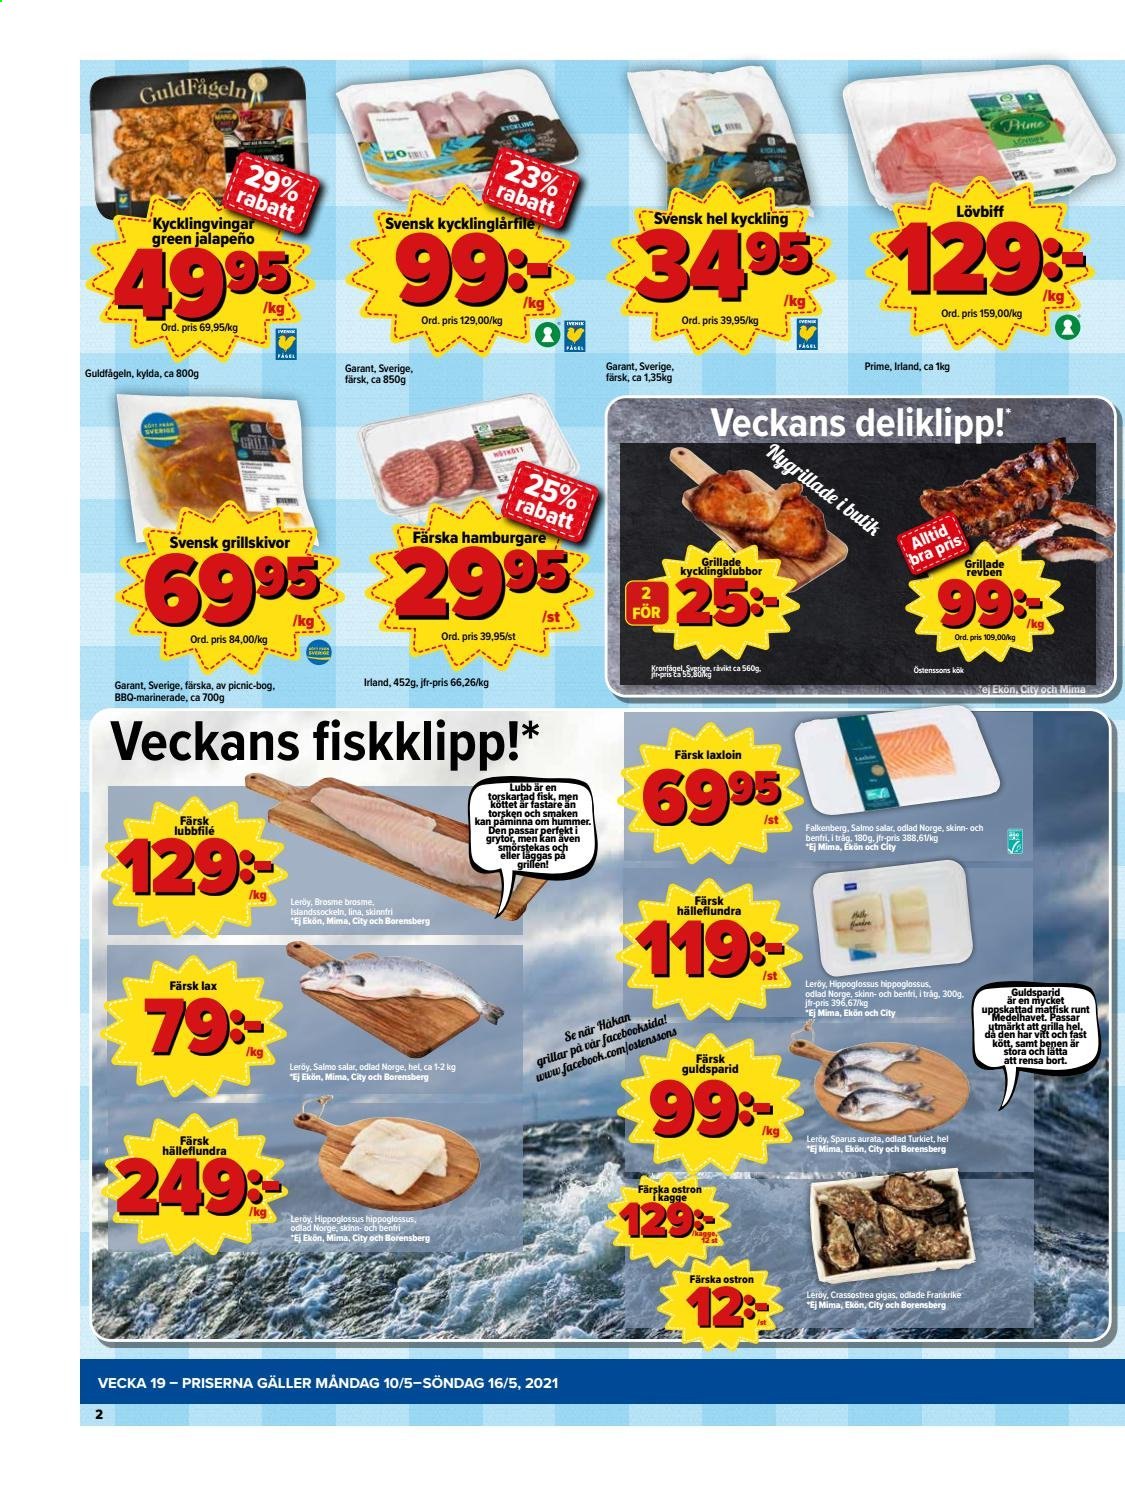 thumbnail - Östenssons reklamblad - 10/5 2021 - 16/5 2021 - varor från reklamblad - hel kyckling, kycklingklubba, kyckling, lövbiff, lax, ostron, färsk lax, hamburgare. Sida 2.